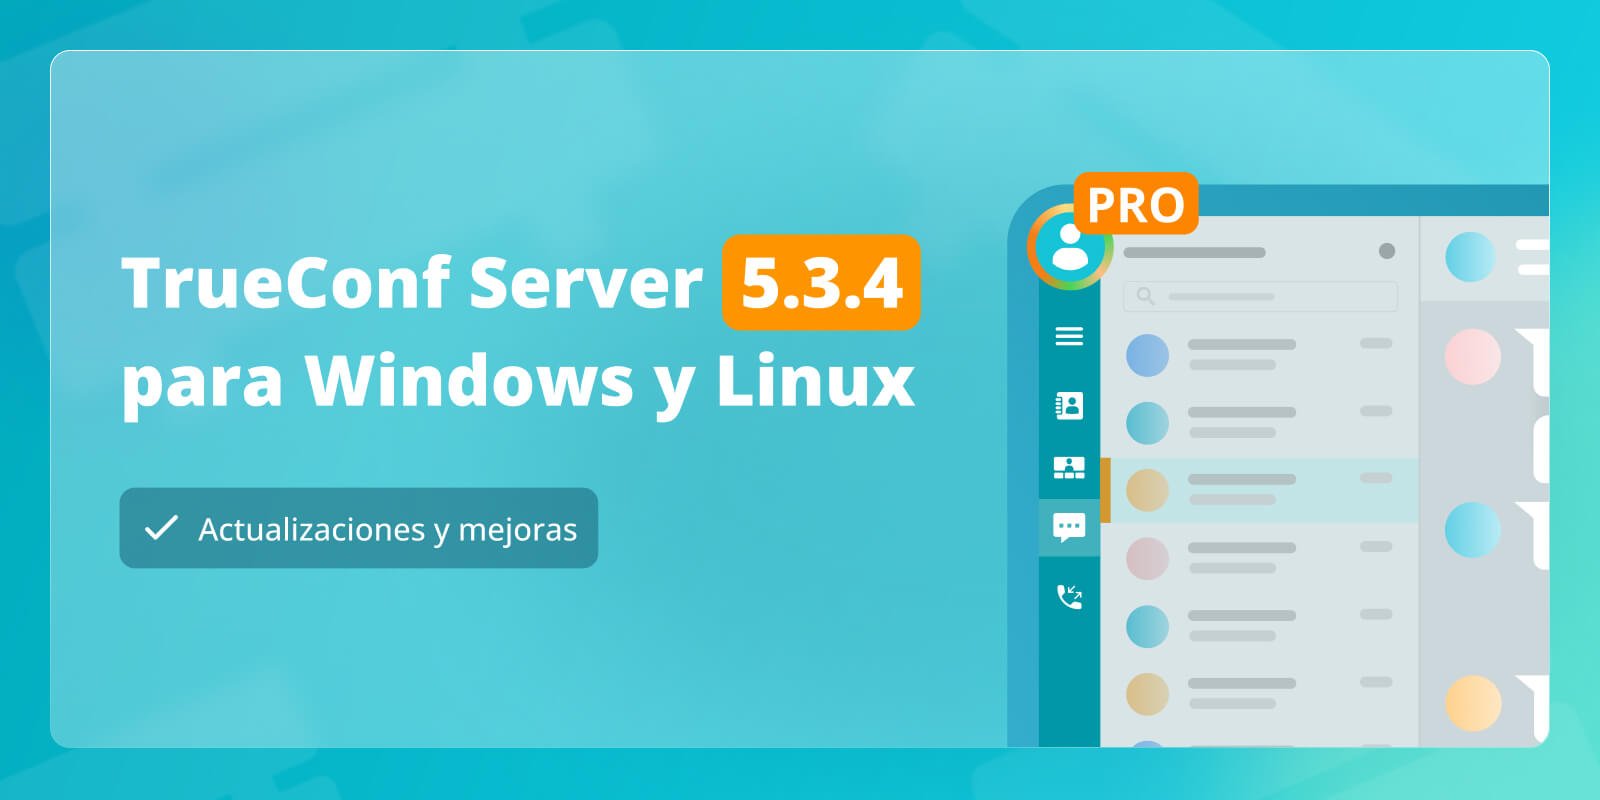 TrueConf Server 5.3.4: actualizaciones y mejoras 4